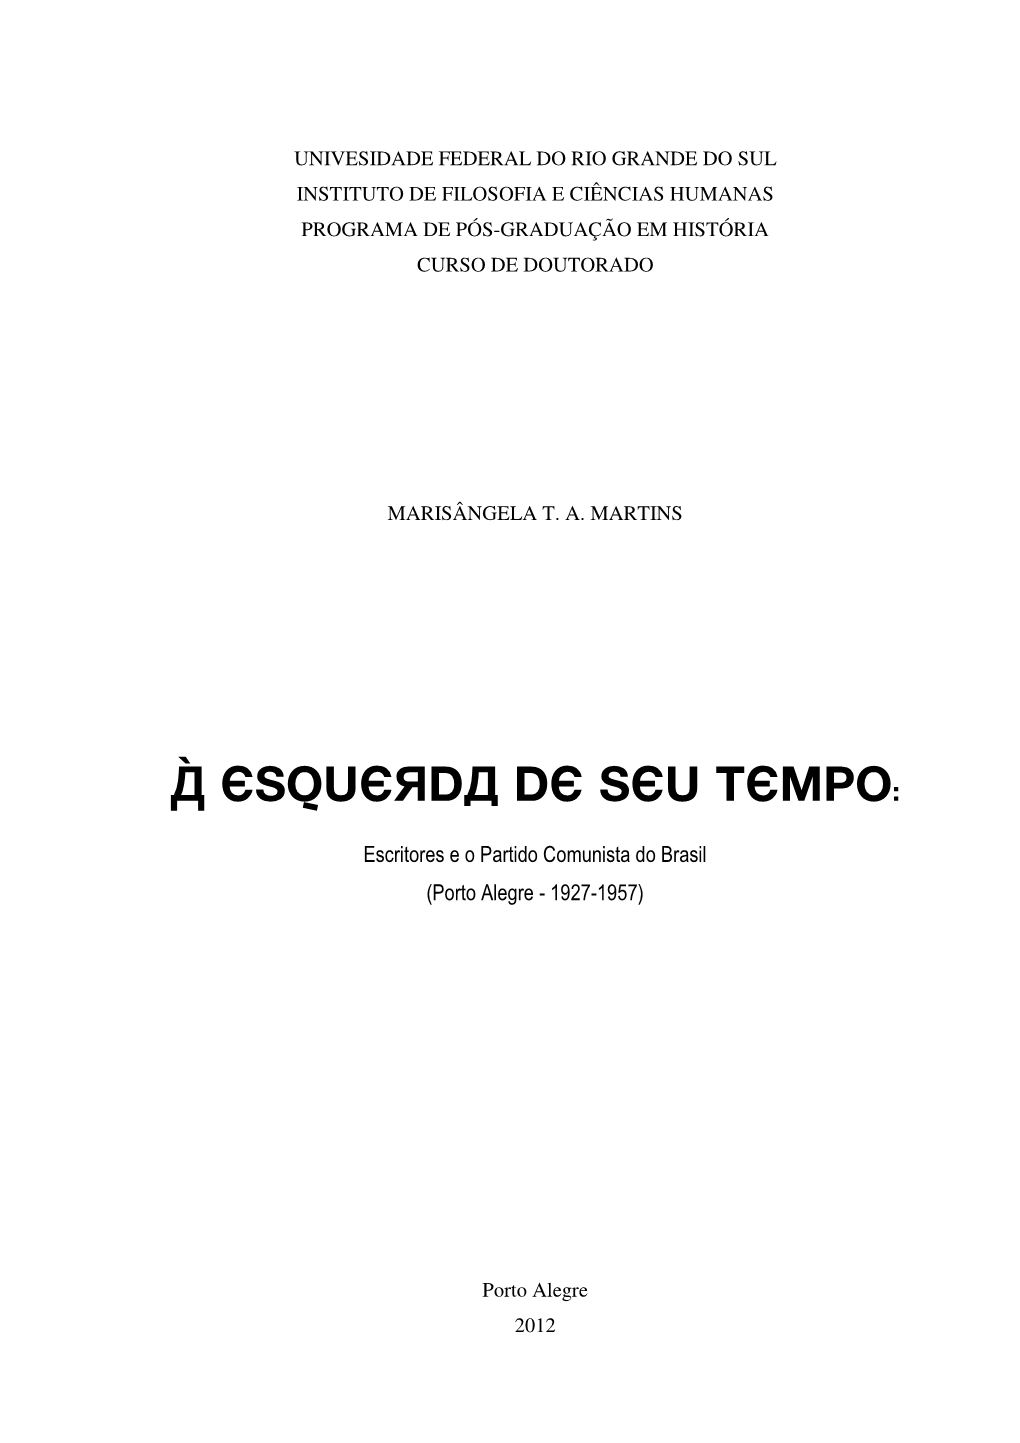 À ESQUERDA DE SEU TEMPO: Escritores E O Partido Comunista Do Brasil (Porto Alegre - 1927-1957)